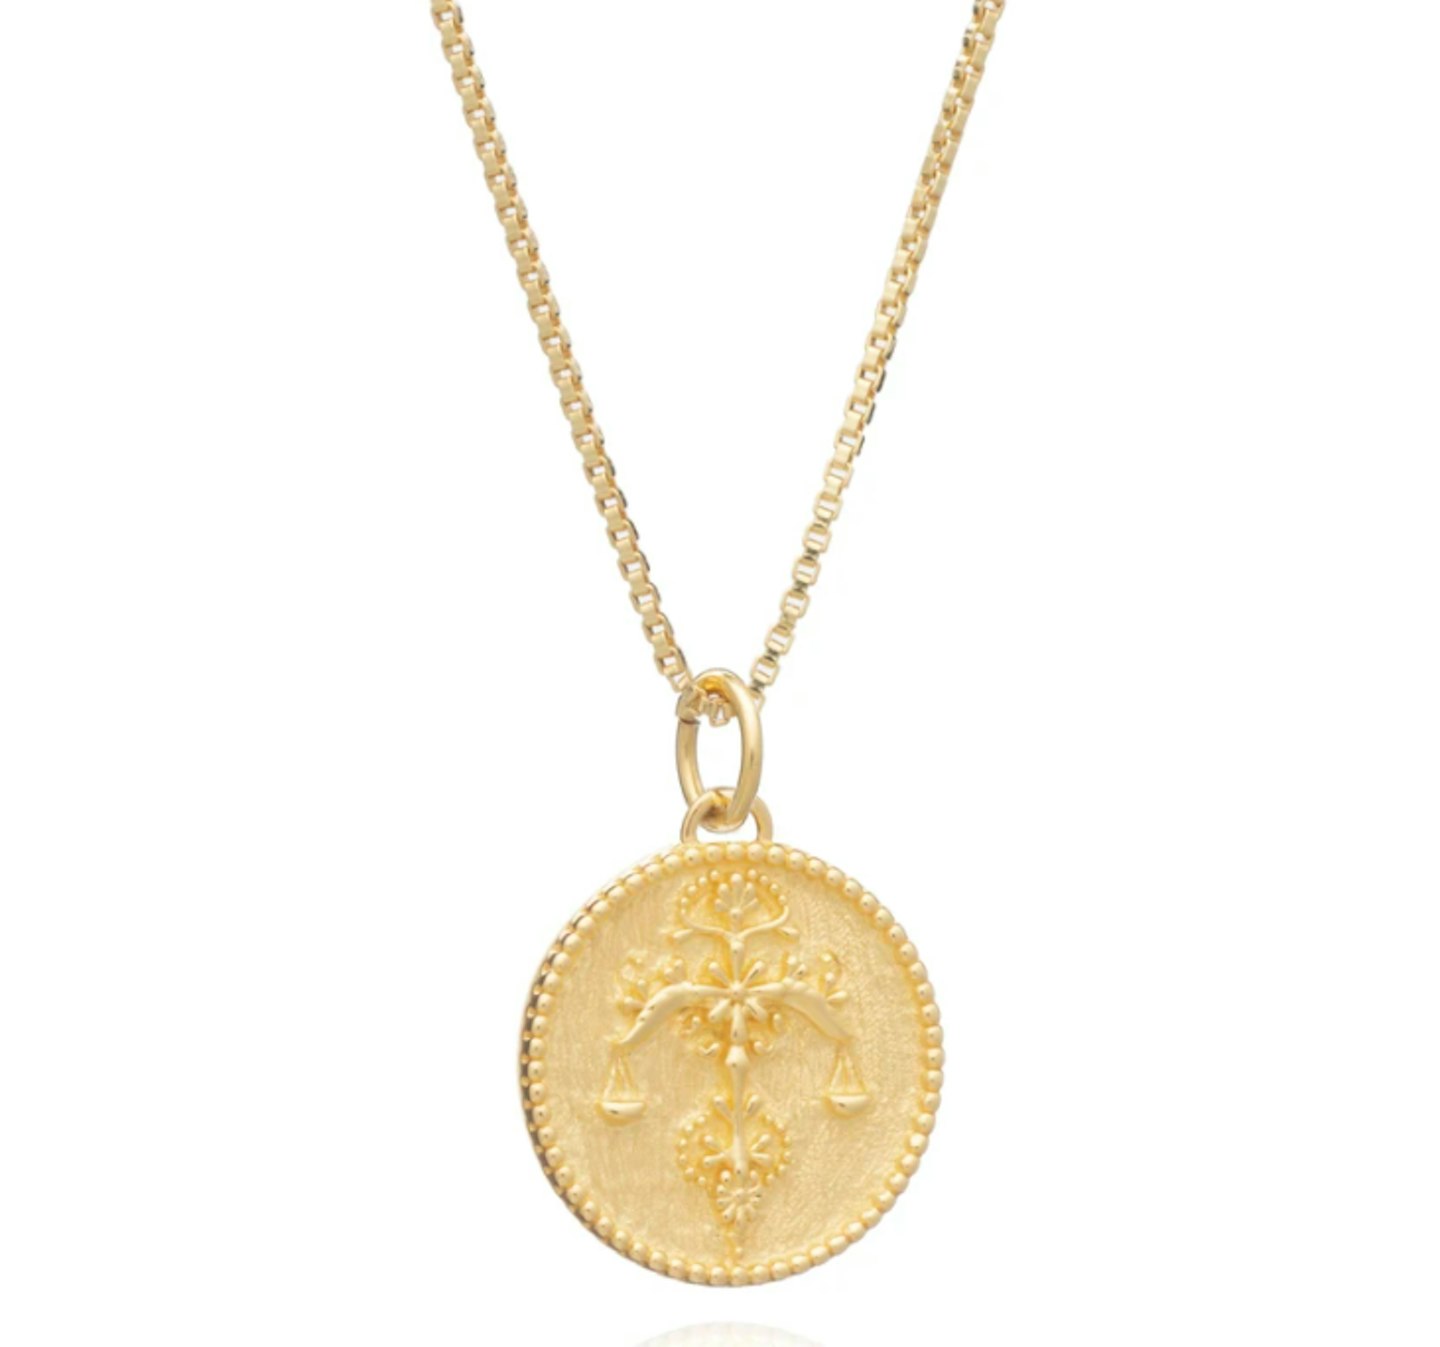 Rachel Jackson, Zodiac Art Coin Necklace, £65